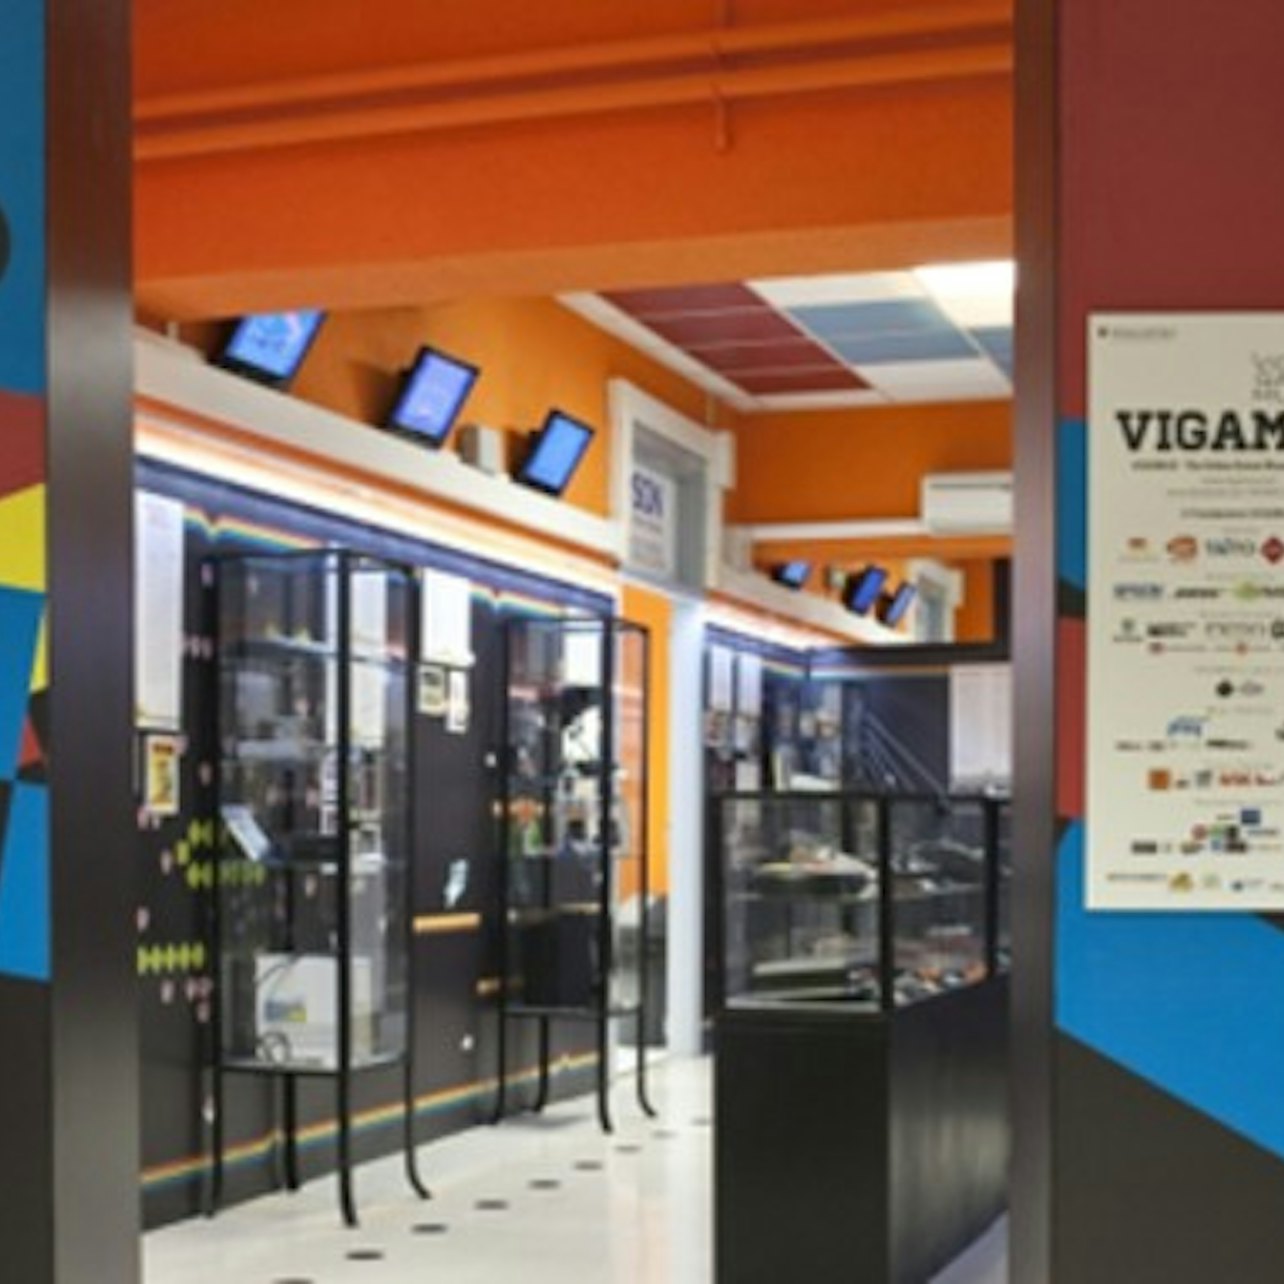 VIGAMUS - Museo de los videojuegos de Roma - Alojamientos en Roma